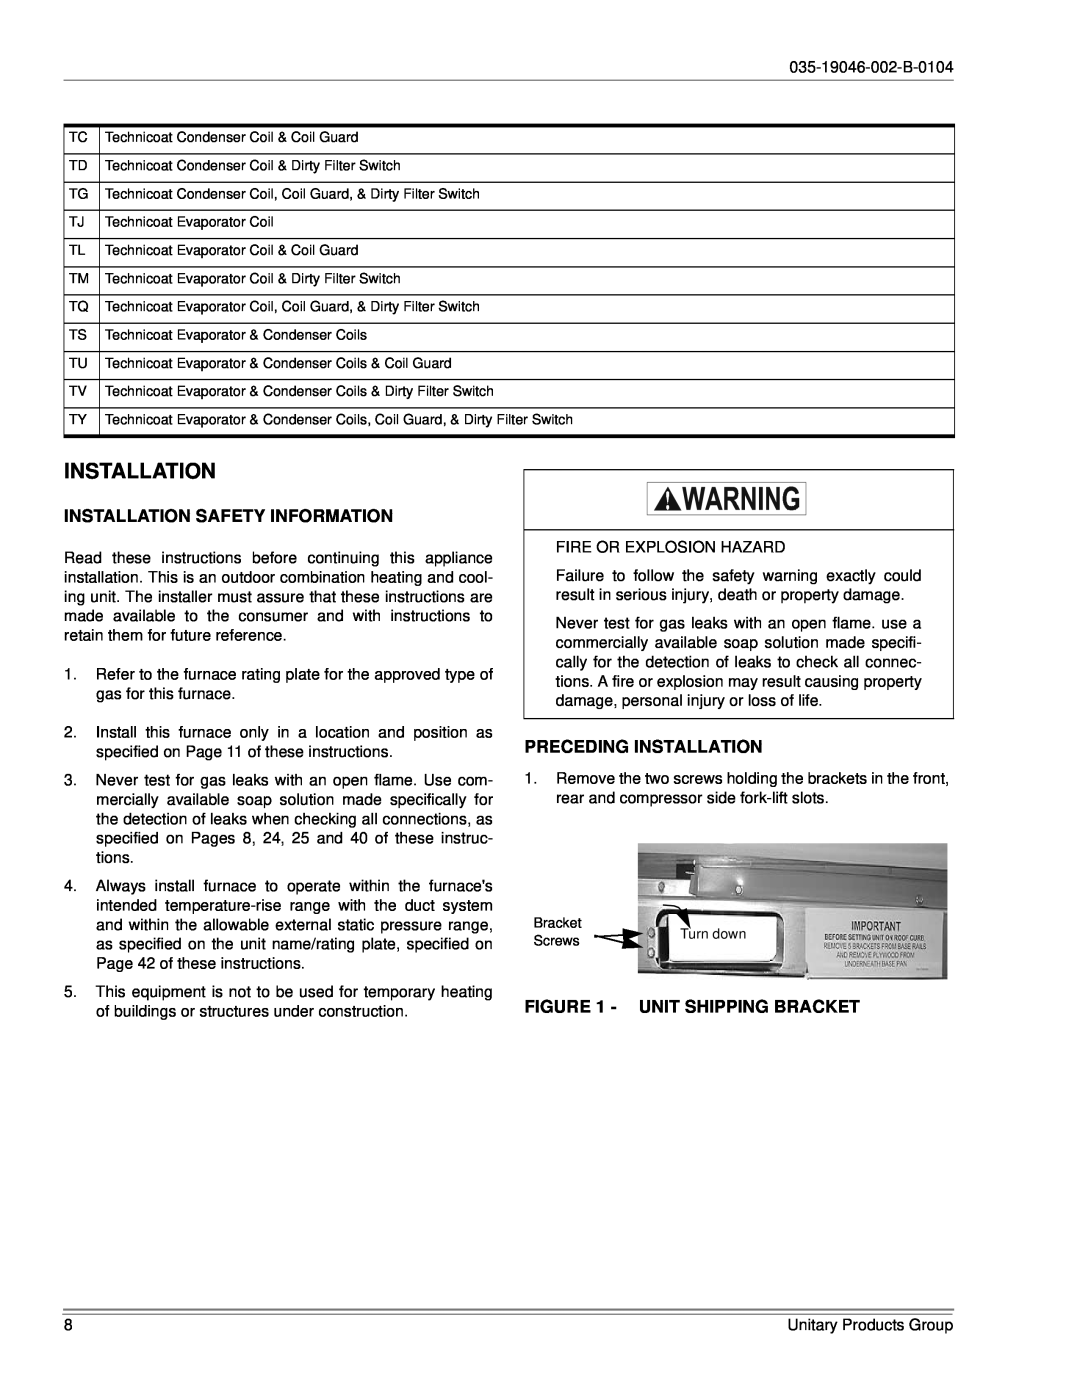 York DJ150 installation manual Installation Safety Information, Preceding Installation, Unit Shipping Bracket 